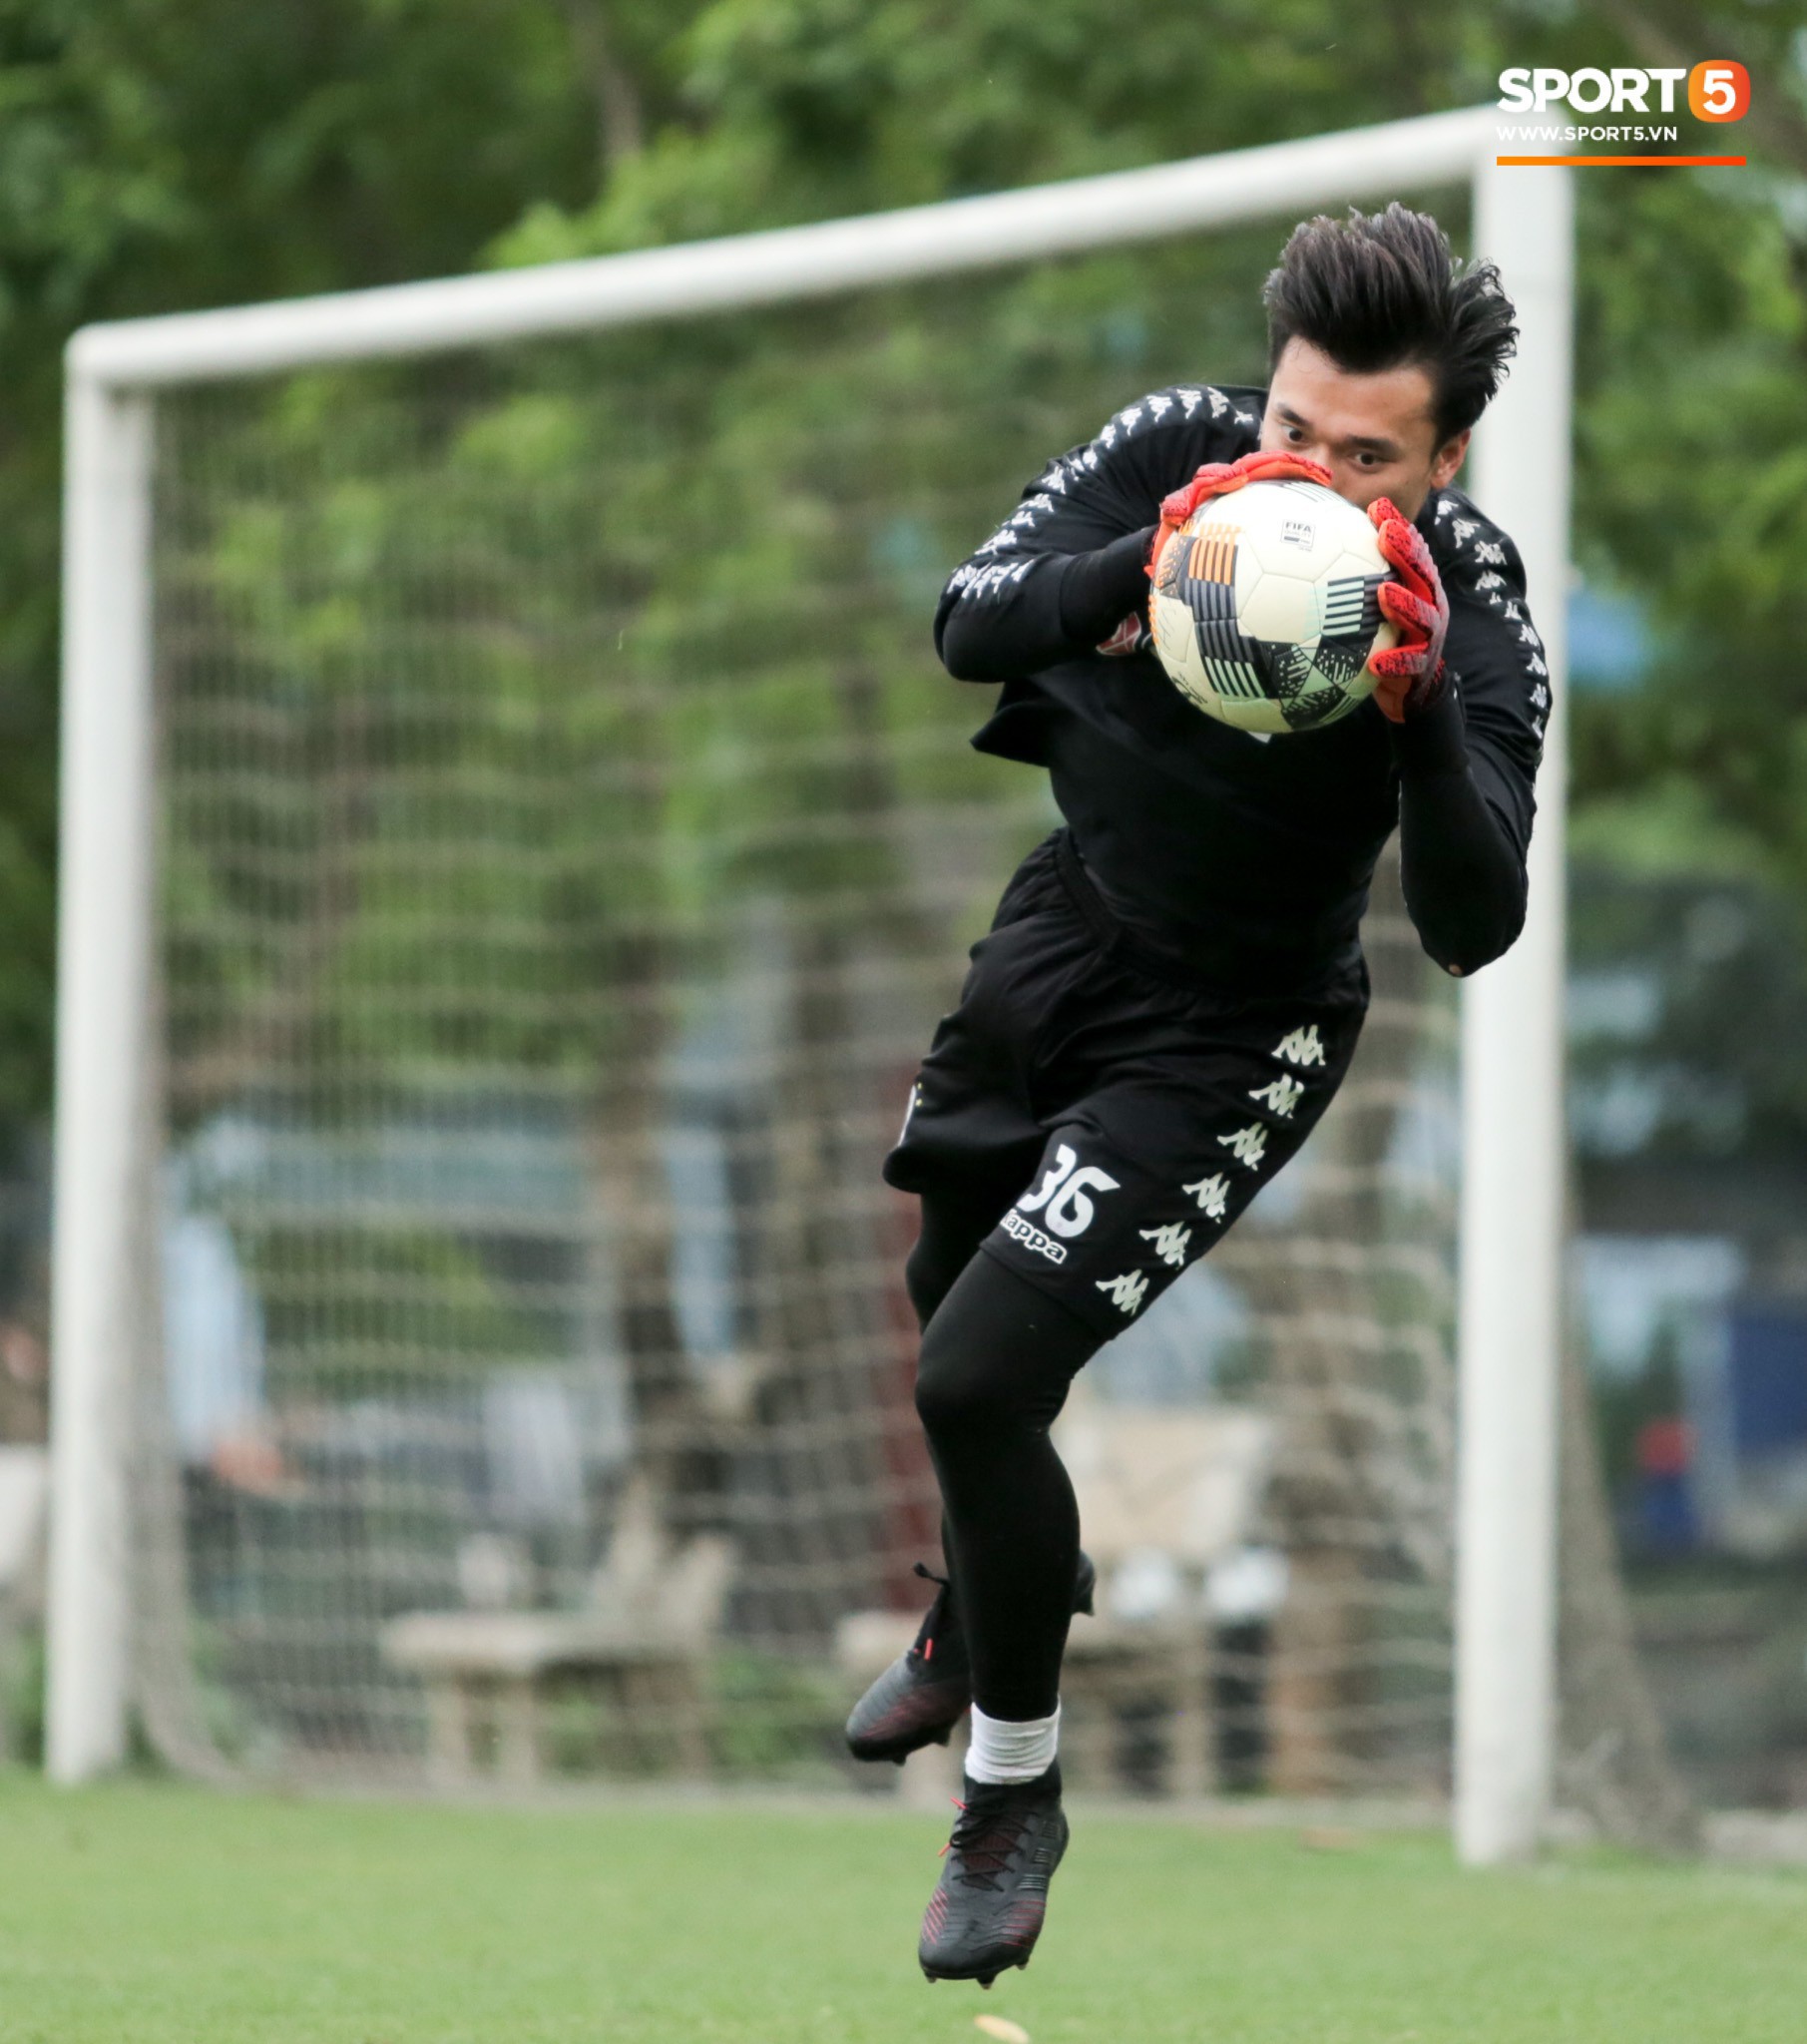 Quang Hải bấm bóng, ghi bàn đẳng cấp vào lưới Tiến Dũng trong buổi tập của Hà Nội FC - Ảnh 10.